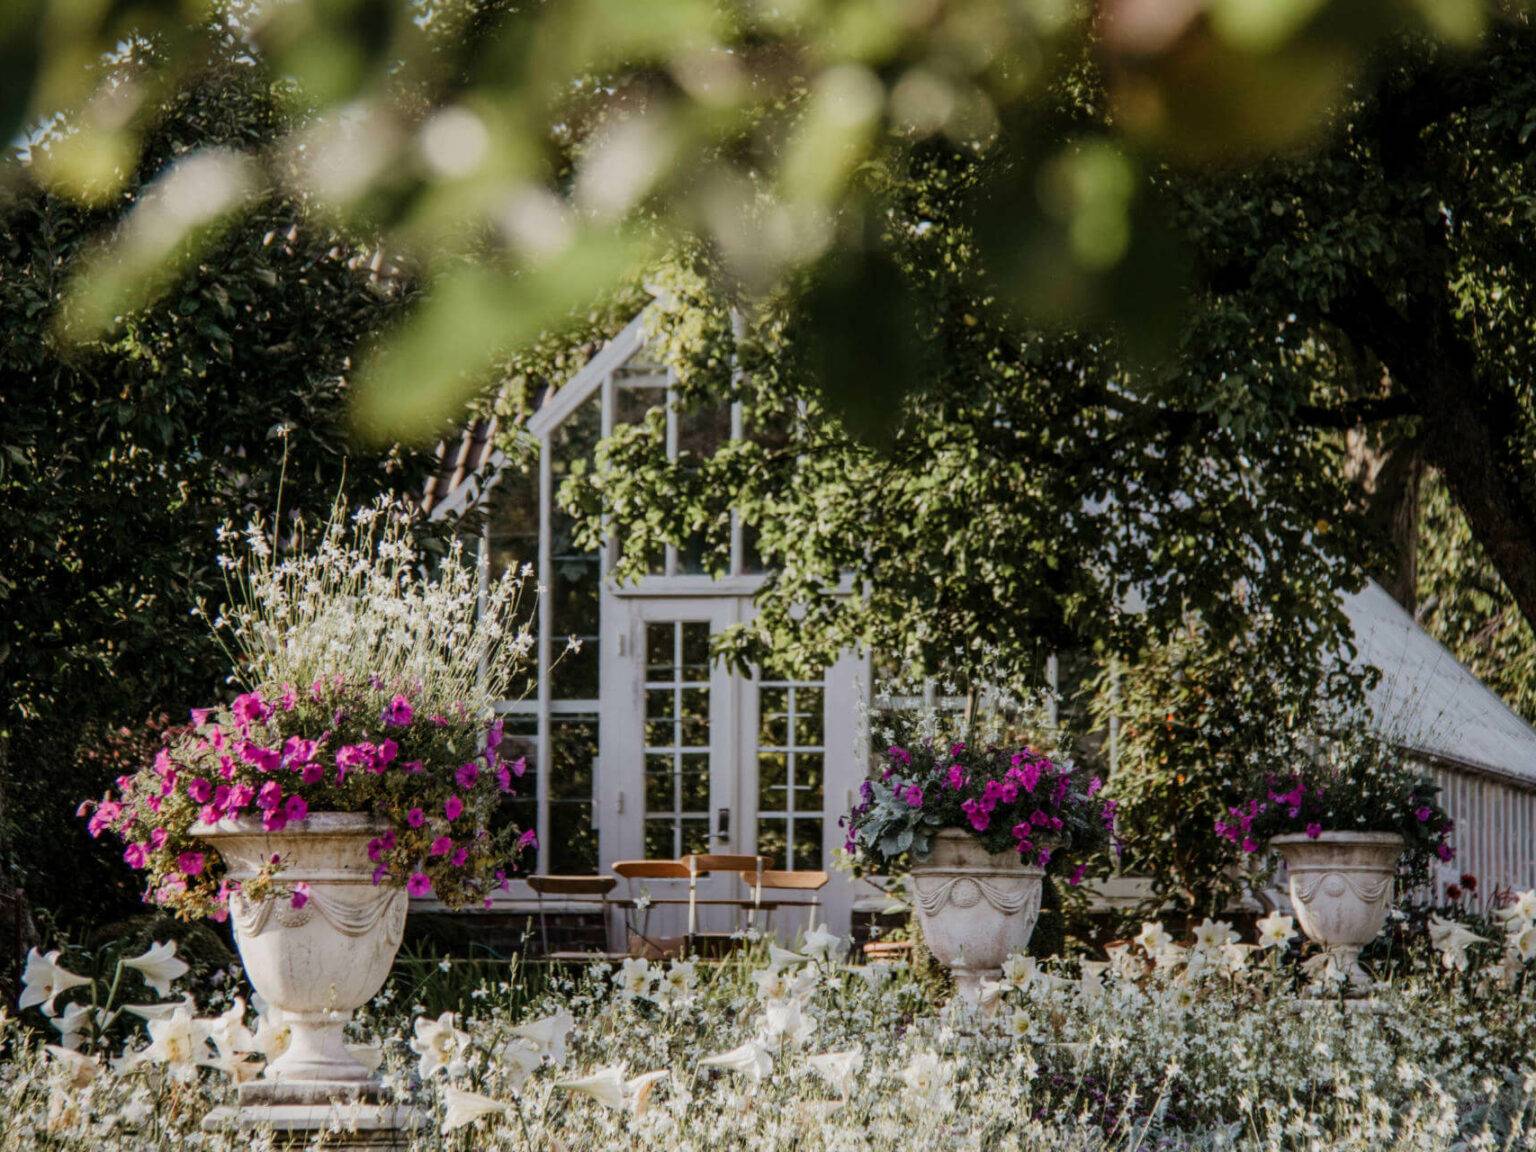 Ein weißes, elegantes Gartenhaus liegt versteckt hinter grünen Bäumen in einem Schlossgarten, davor stehen große Kübel mit rosaroten Blumen.